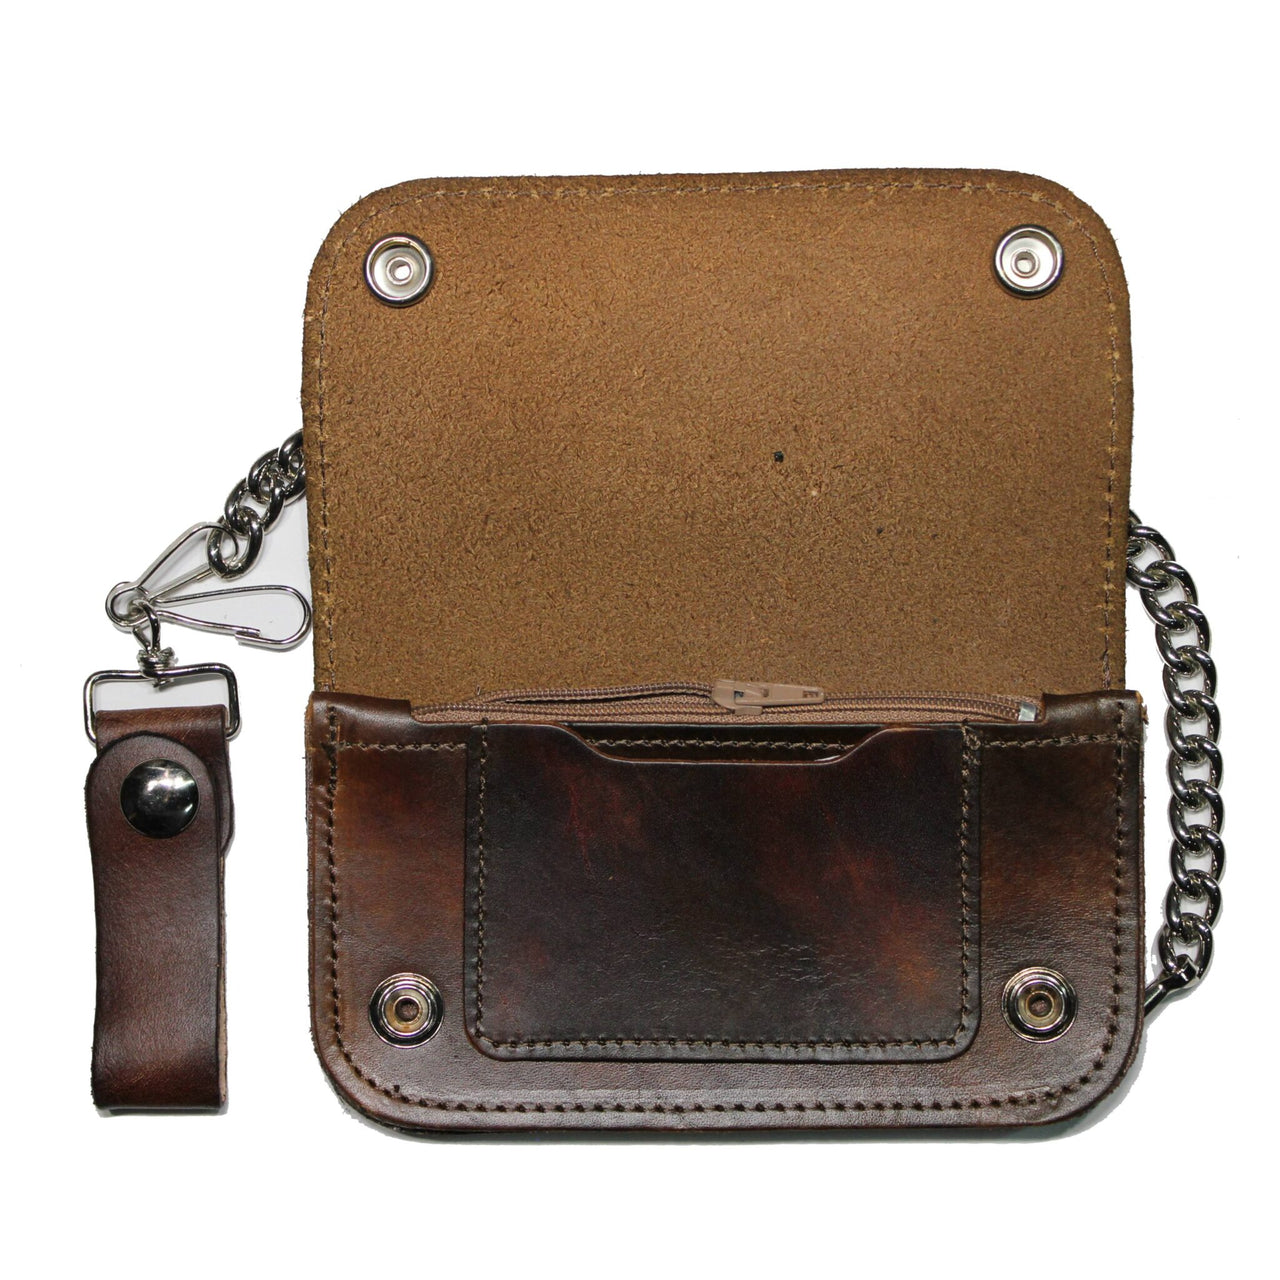 6” California Biker Leather Wallet w/ Chain